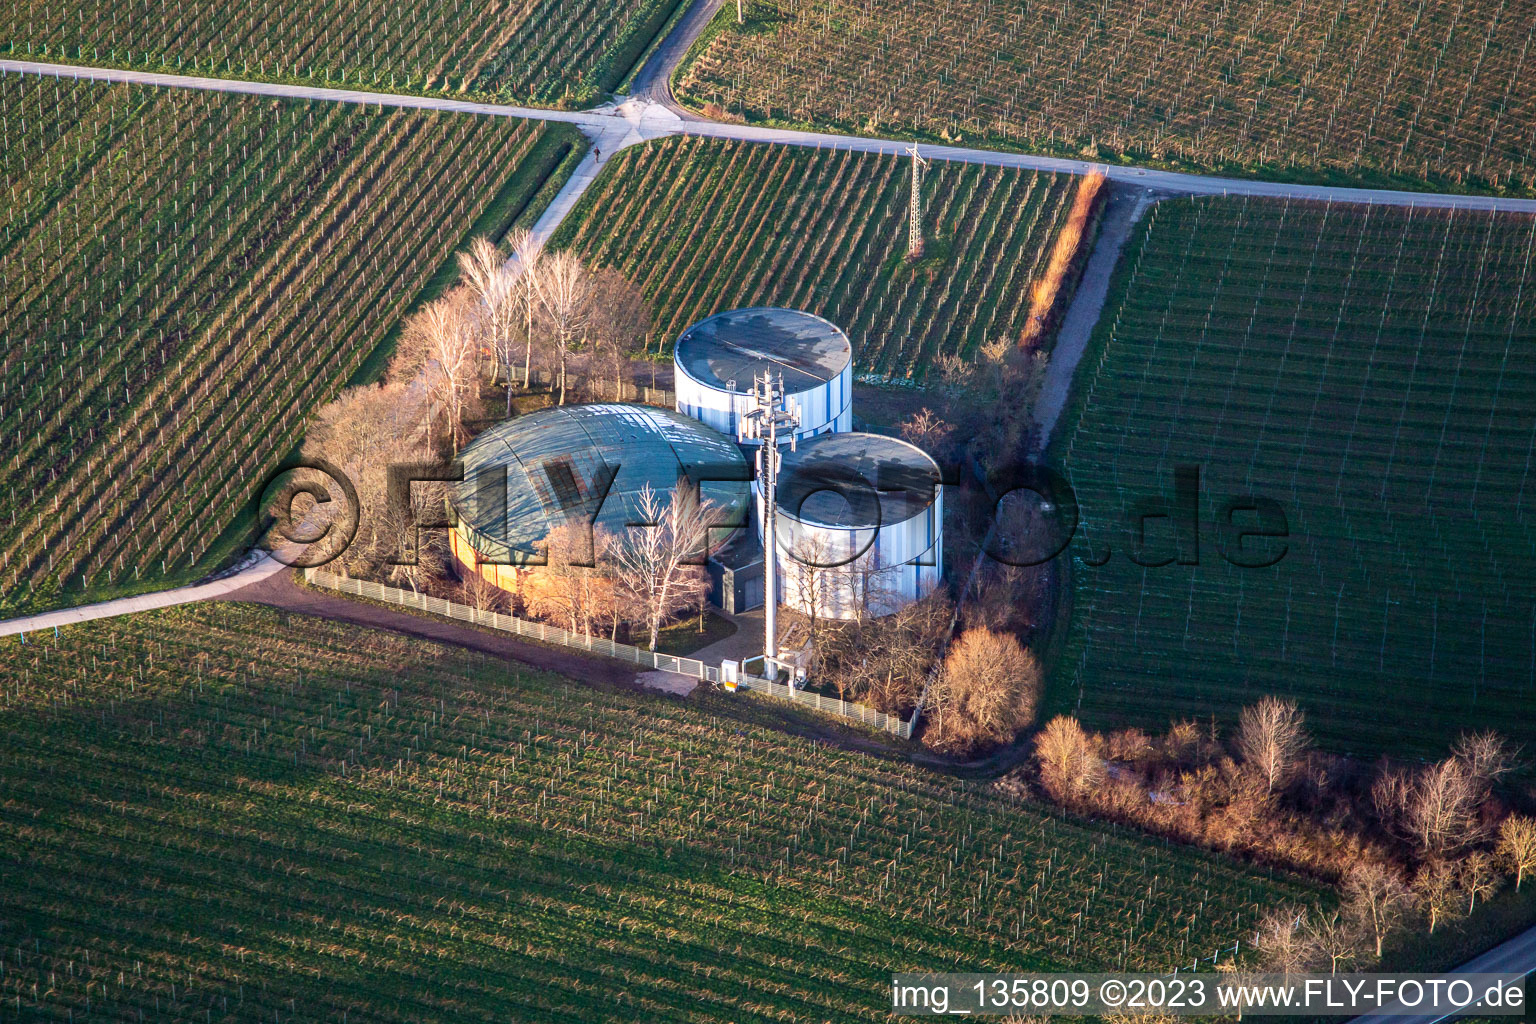 Drinking water storage in the vineyards in the district Arzheim in Landau in der Pfalz in the state Rhineland-Palatinate, Germany